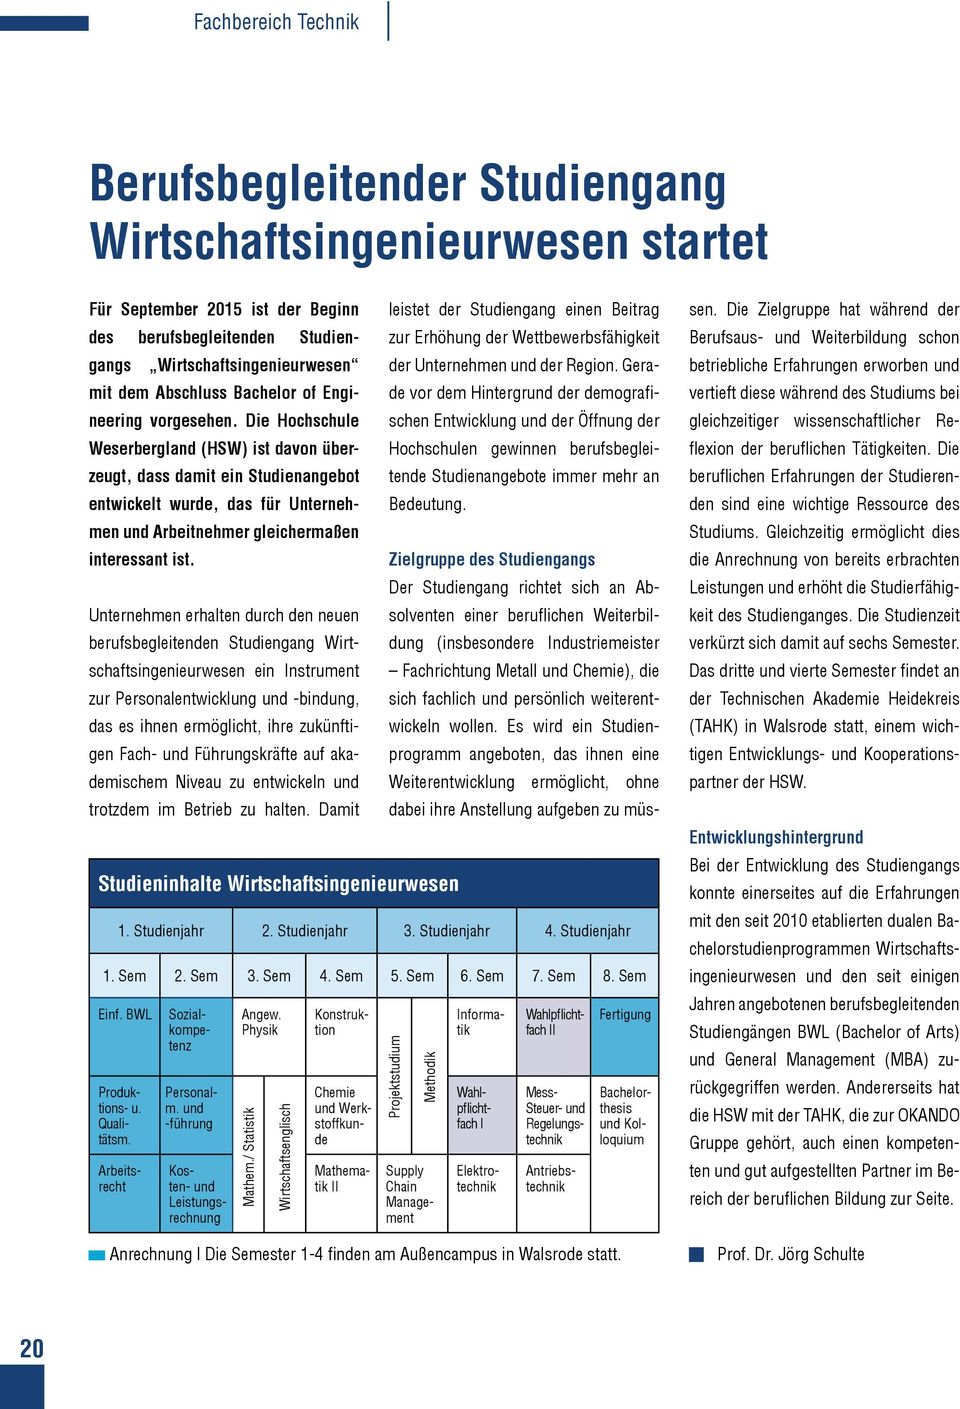 Die Hochschule Weserbergland (HSW) ist davon überzeugt, dass damit ein Studienangebot entwickelt wurde, das für Unternehmen und Arbeitnehmer gleichermaßen interessant ist.